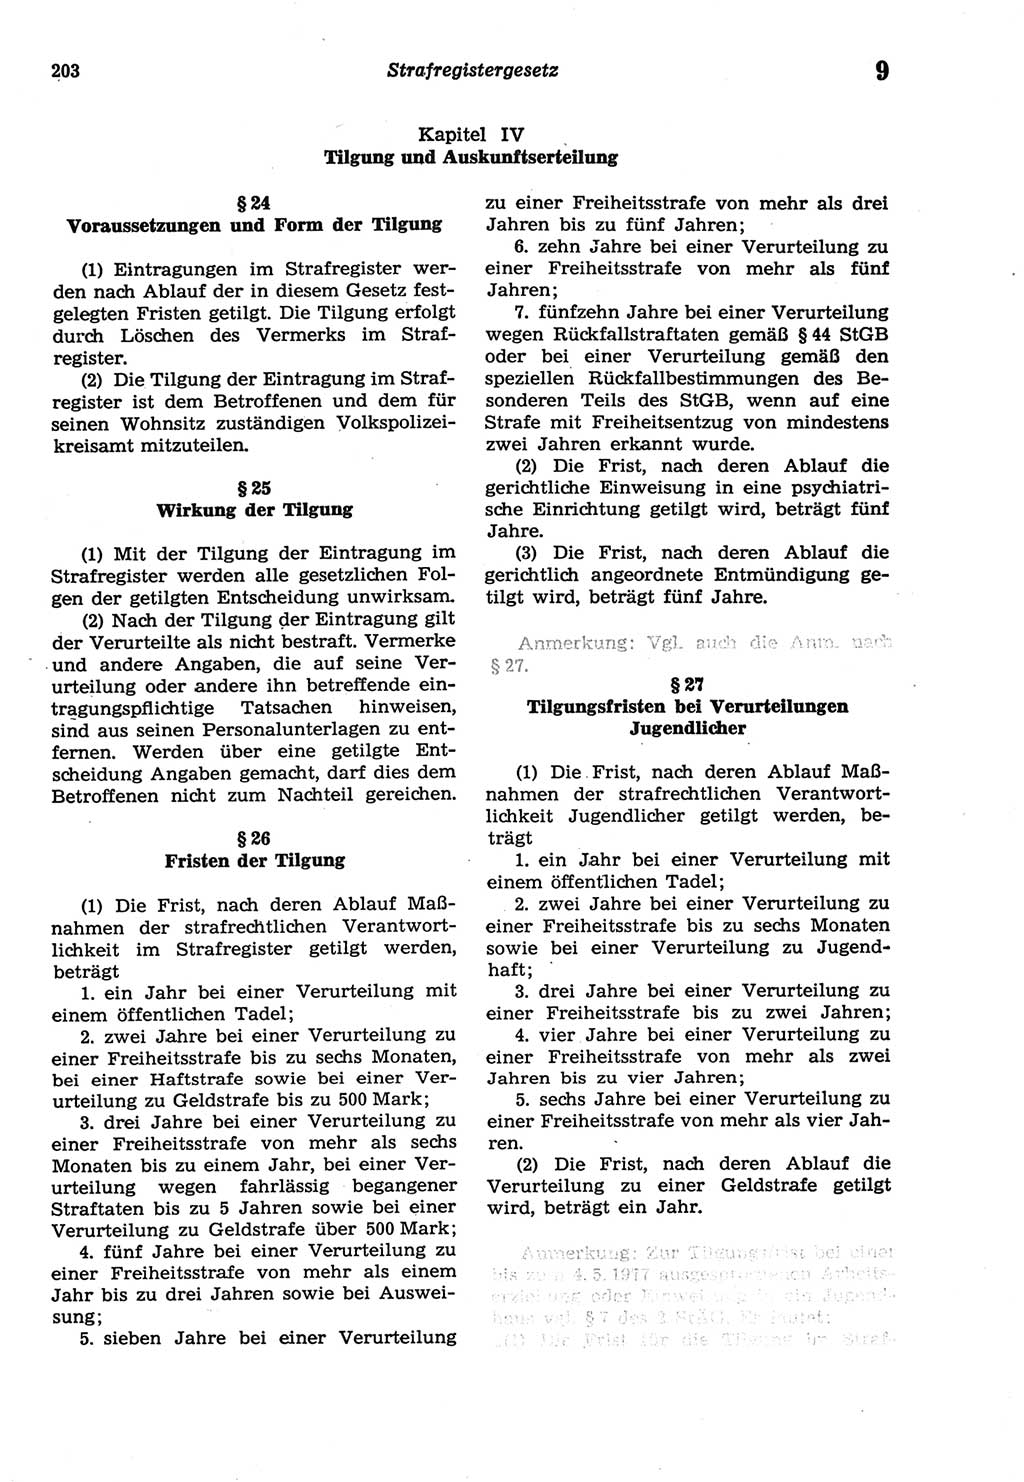 Strafprozeßordnung (StPO) der Deutschen Demokratischen Republik (DDR) sowie angrenzende Gesetze und Bestimmungen 1977, Seite 203 (StPO DDR Ges. Best. 1977, S. 203)